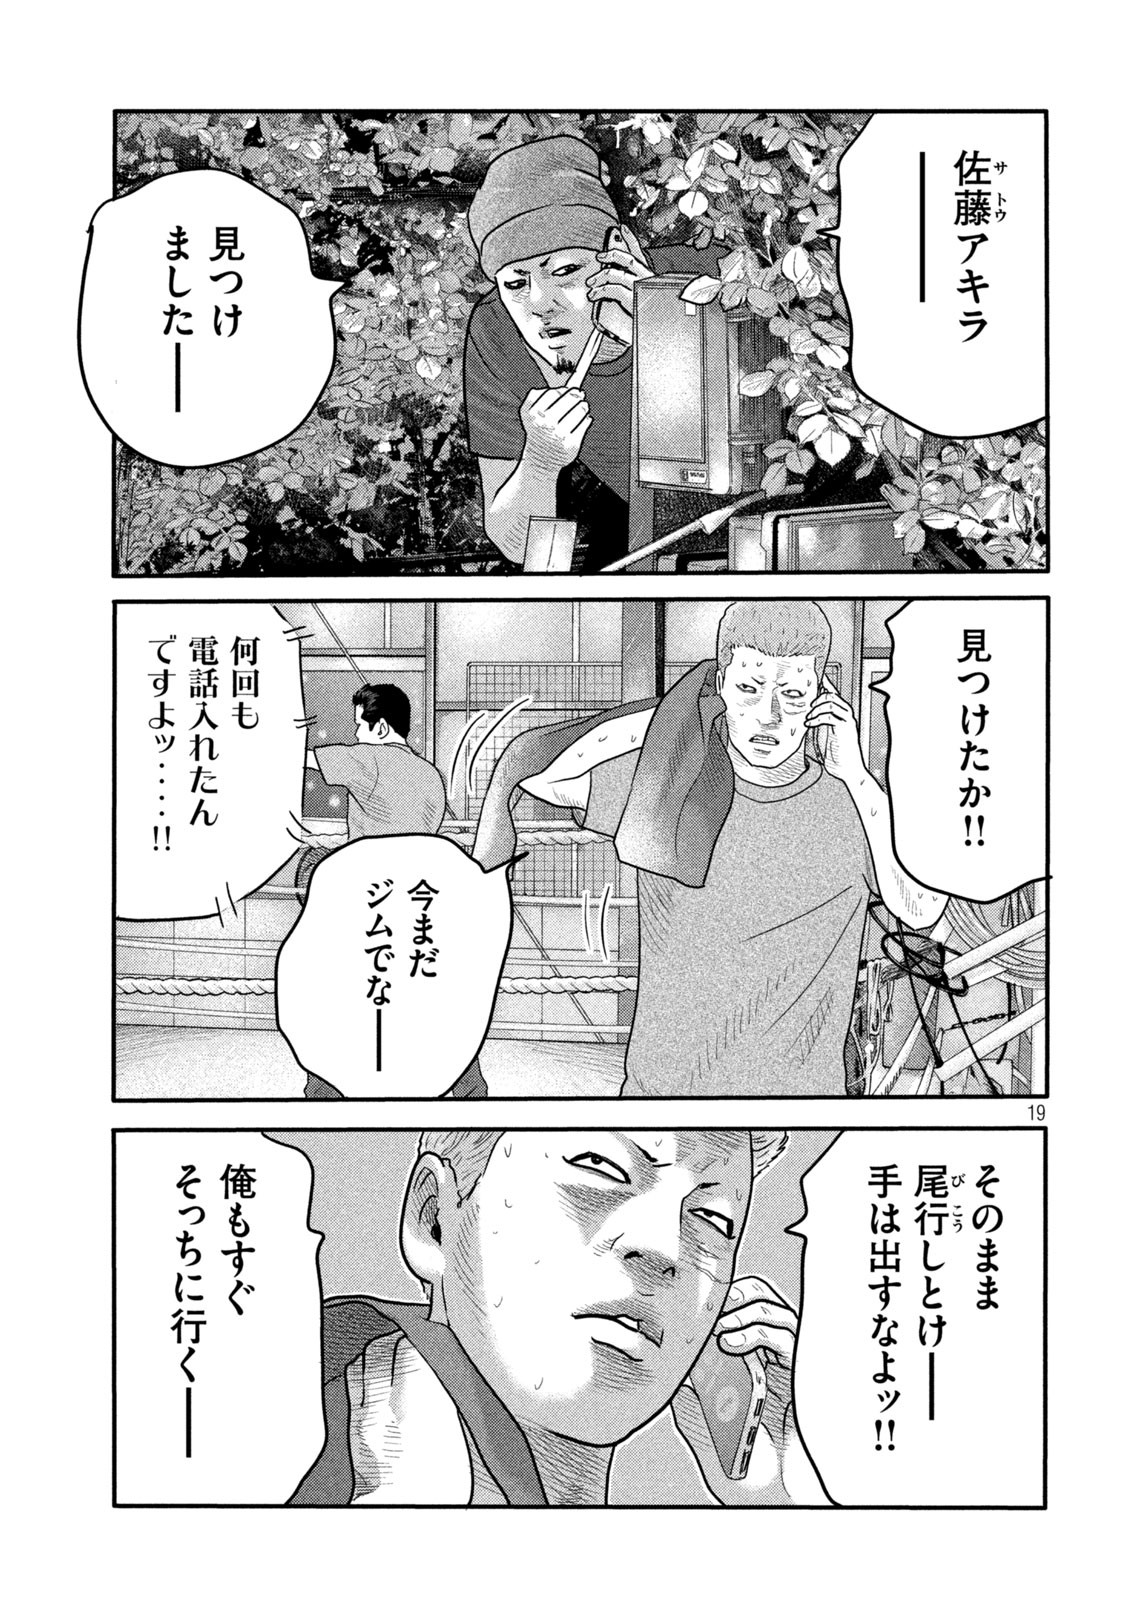 ザ・ファブル The Second Contact 第2話 - Page 19